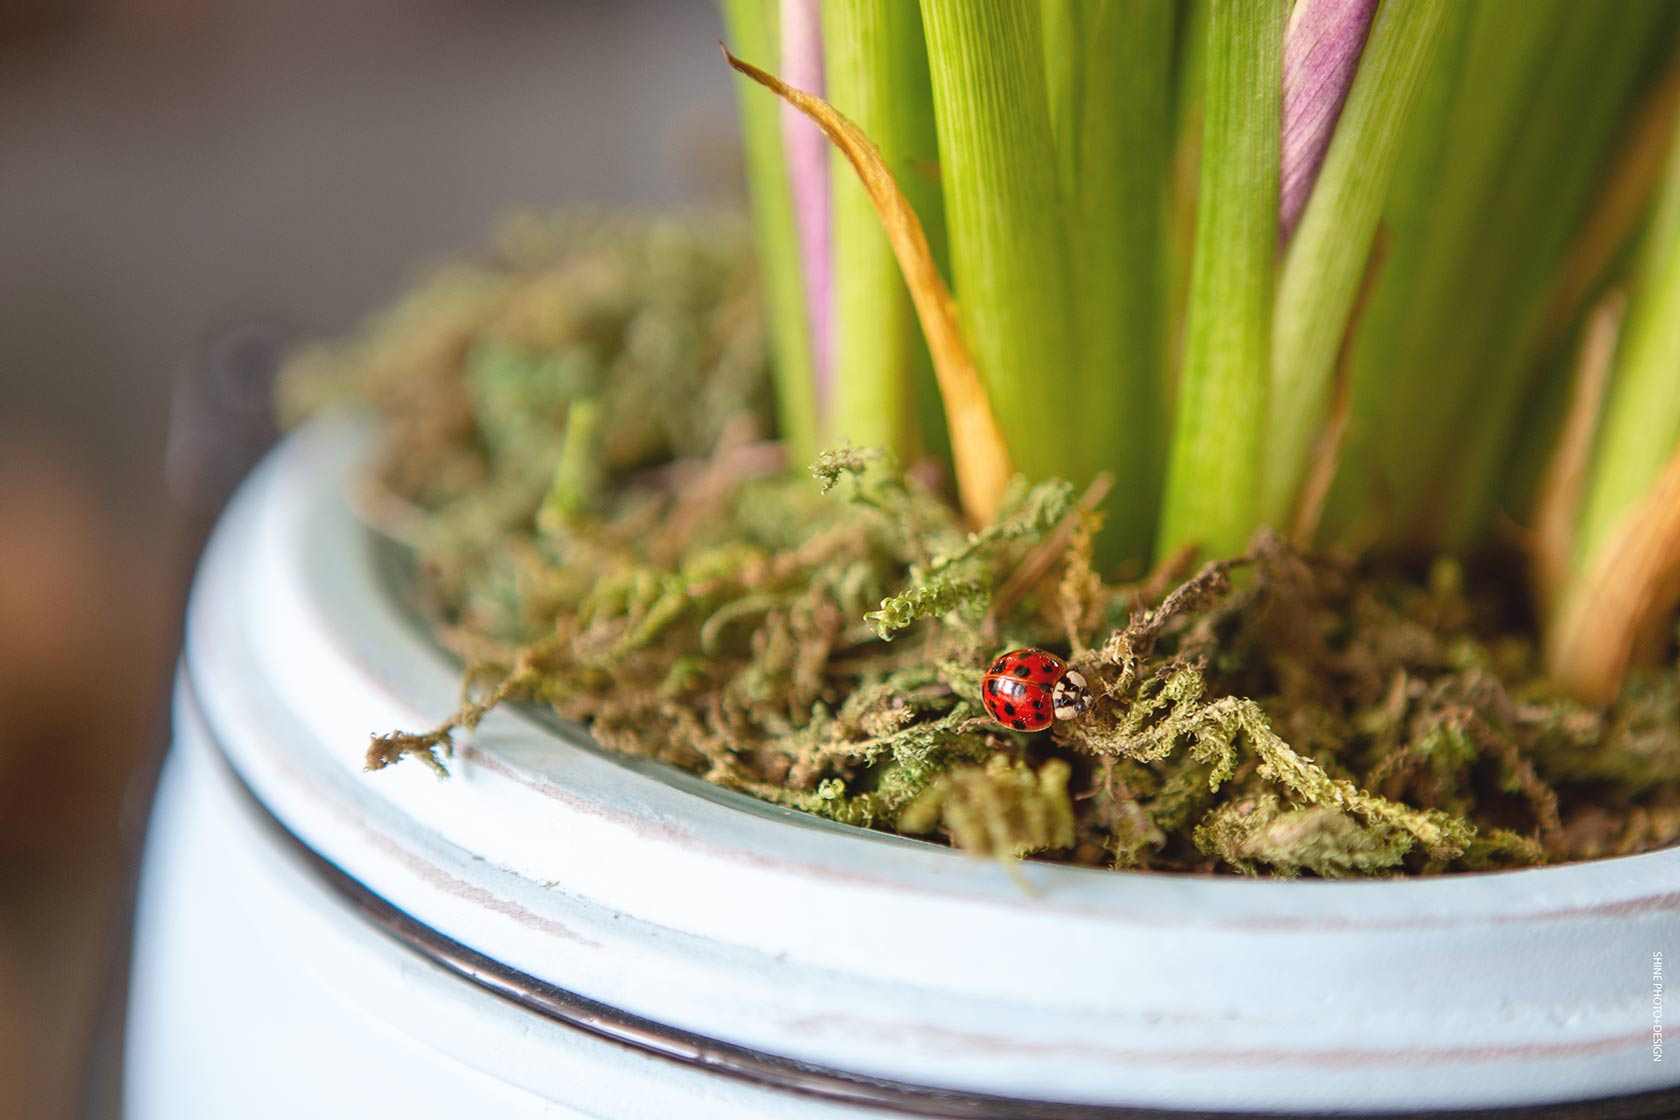 ladybug by SHINE Photo+Design